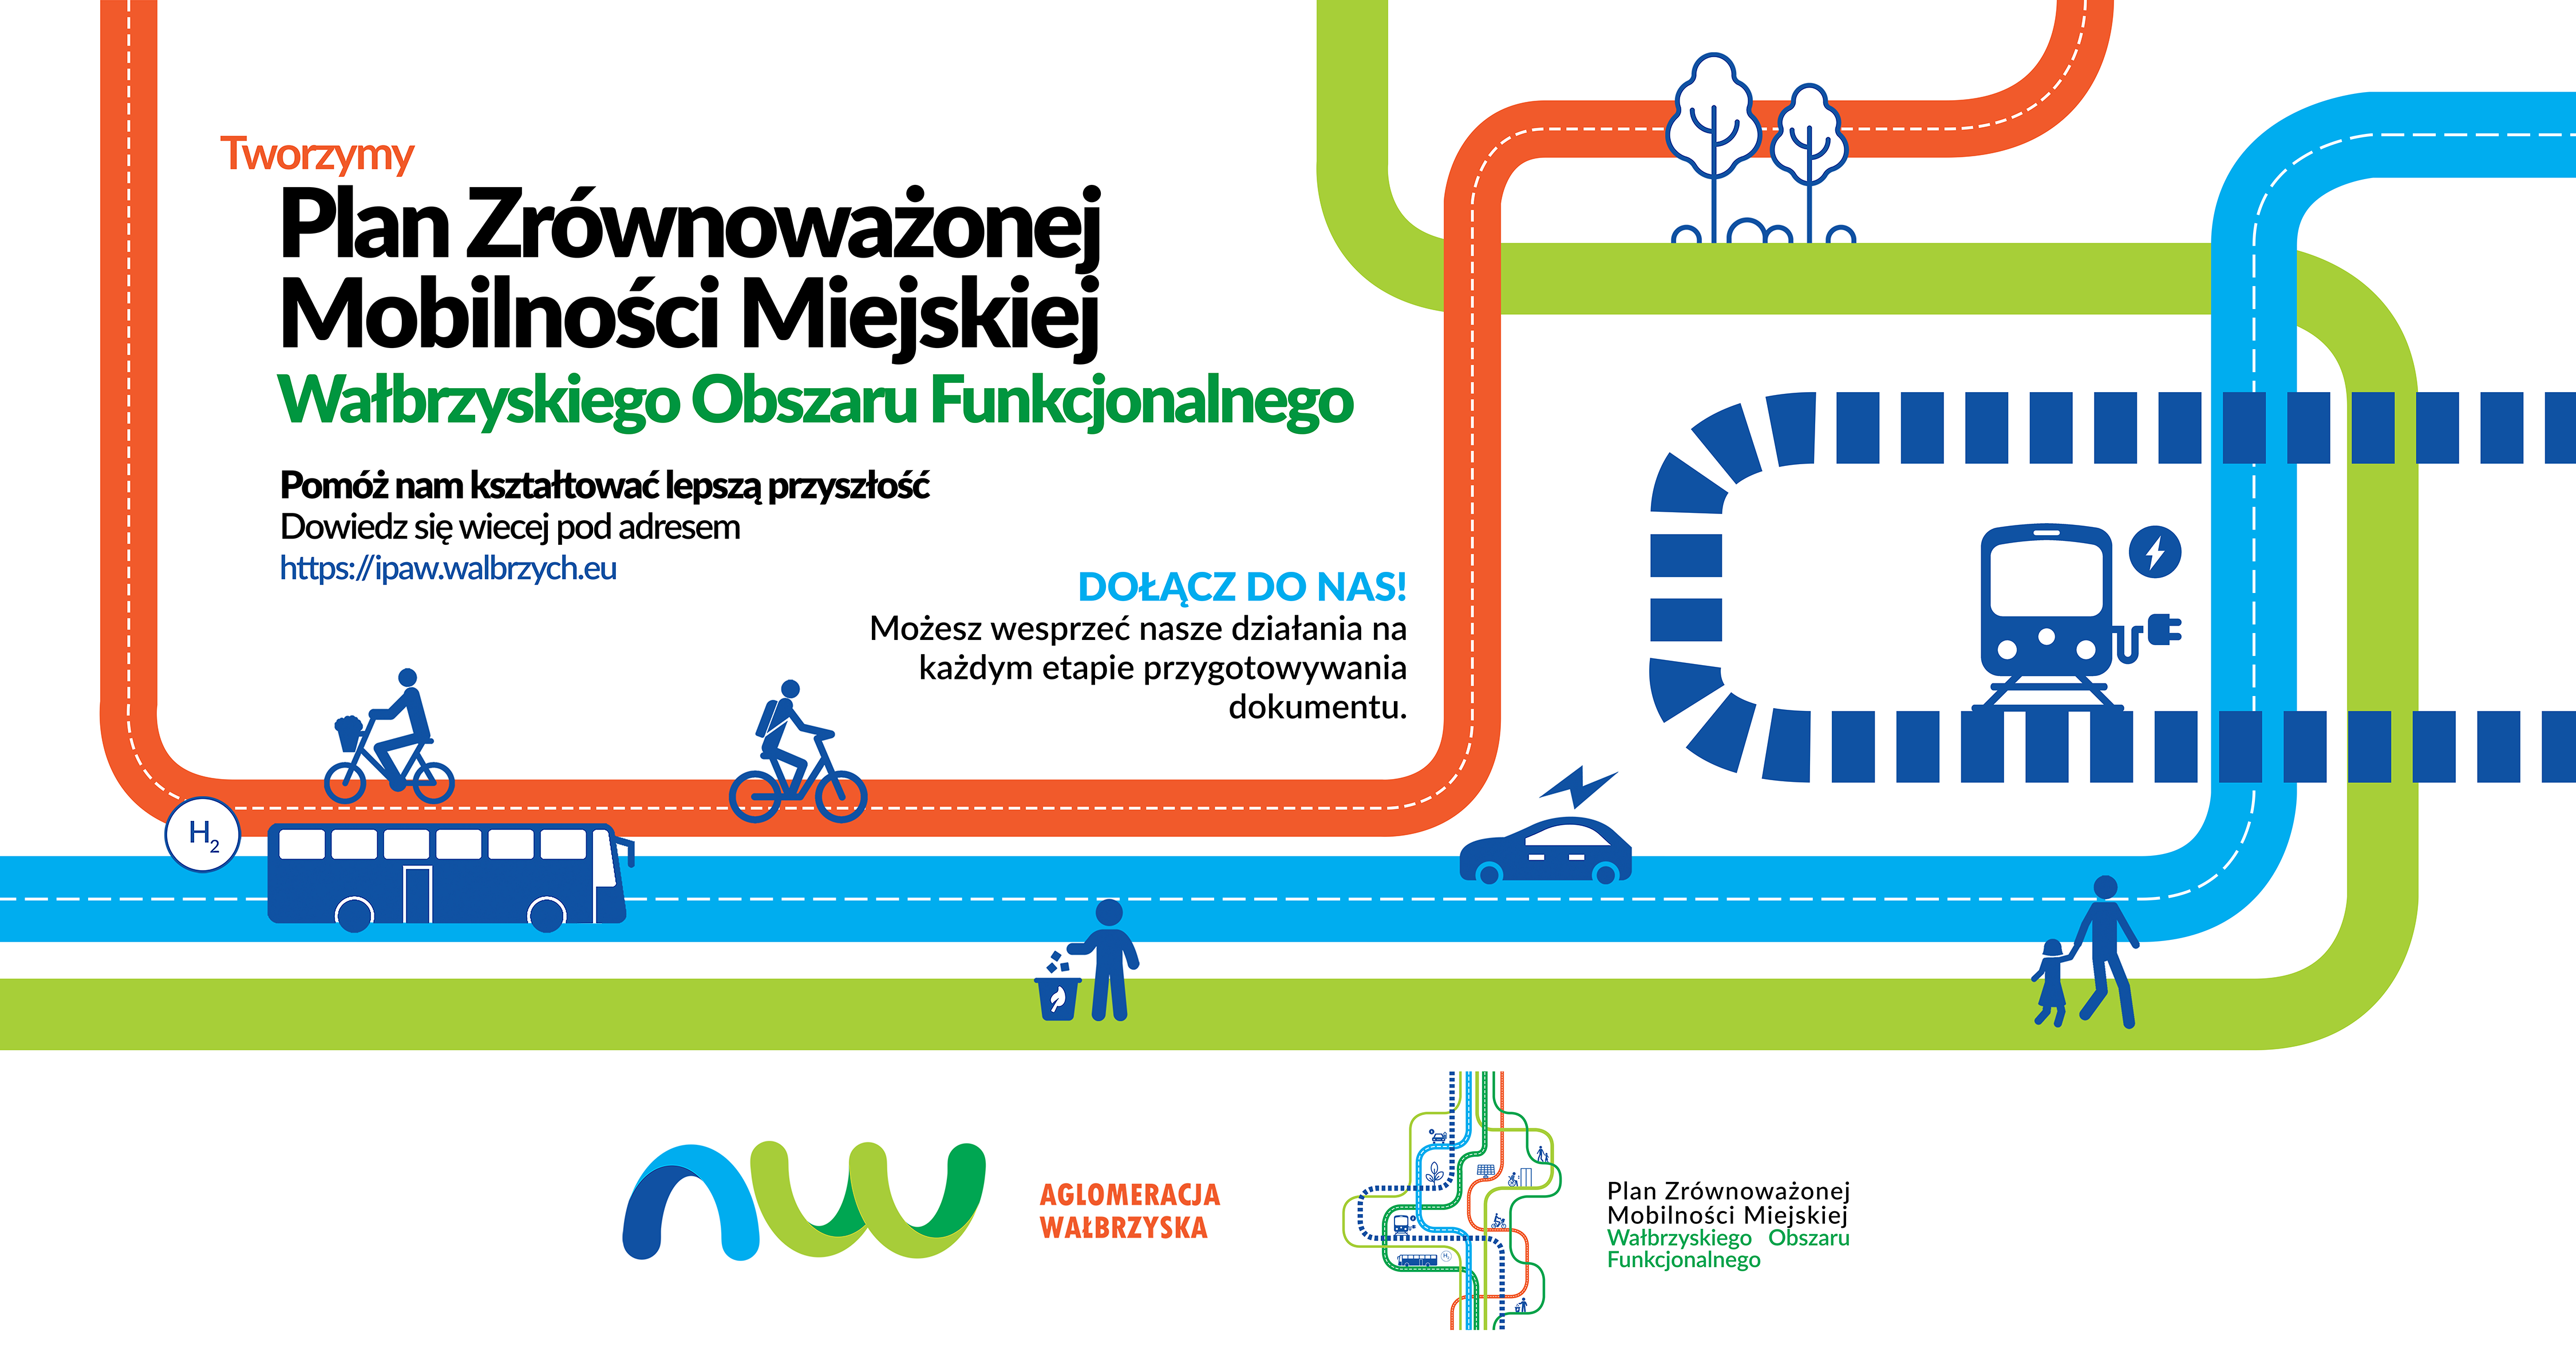 Plan Zrównoważonej Mobilności Wałbrzyskiego Obszaru Funkcjonalnego: Pozostały tylko 4 dni na udzielenie odpowiedzi ankietowej!